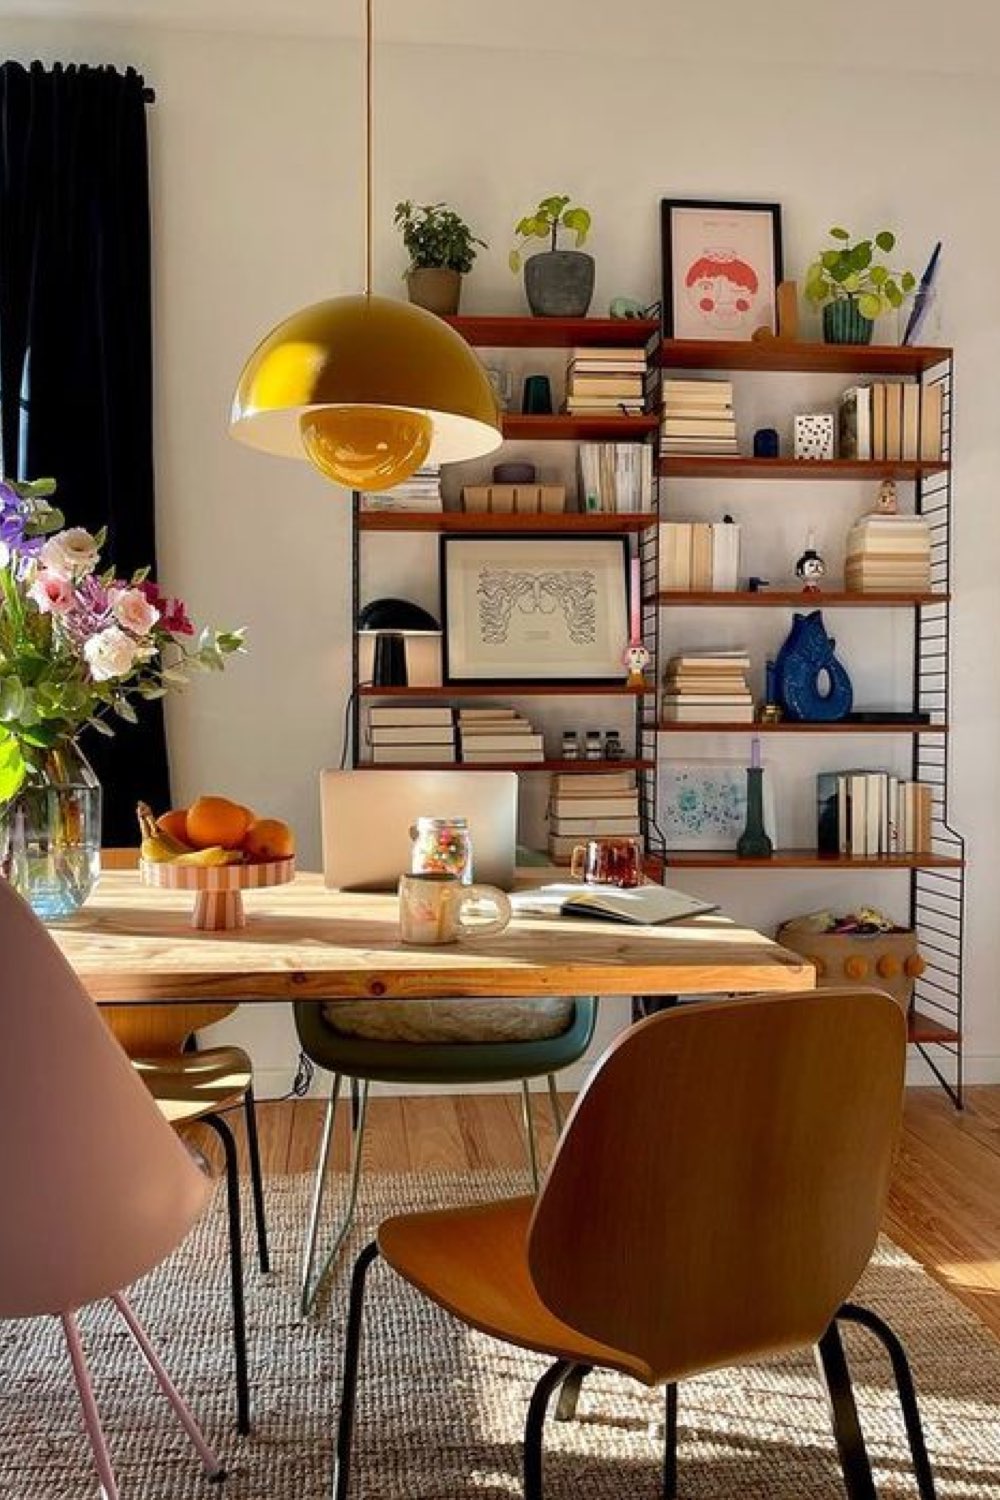 style eclectique ou decor vintage moderne salle à manger table en bois plateau fin chaise design bibliothèque string